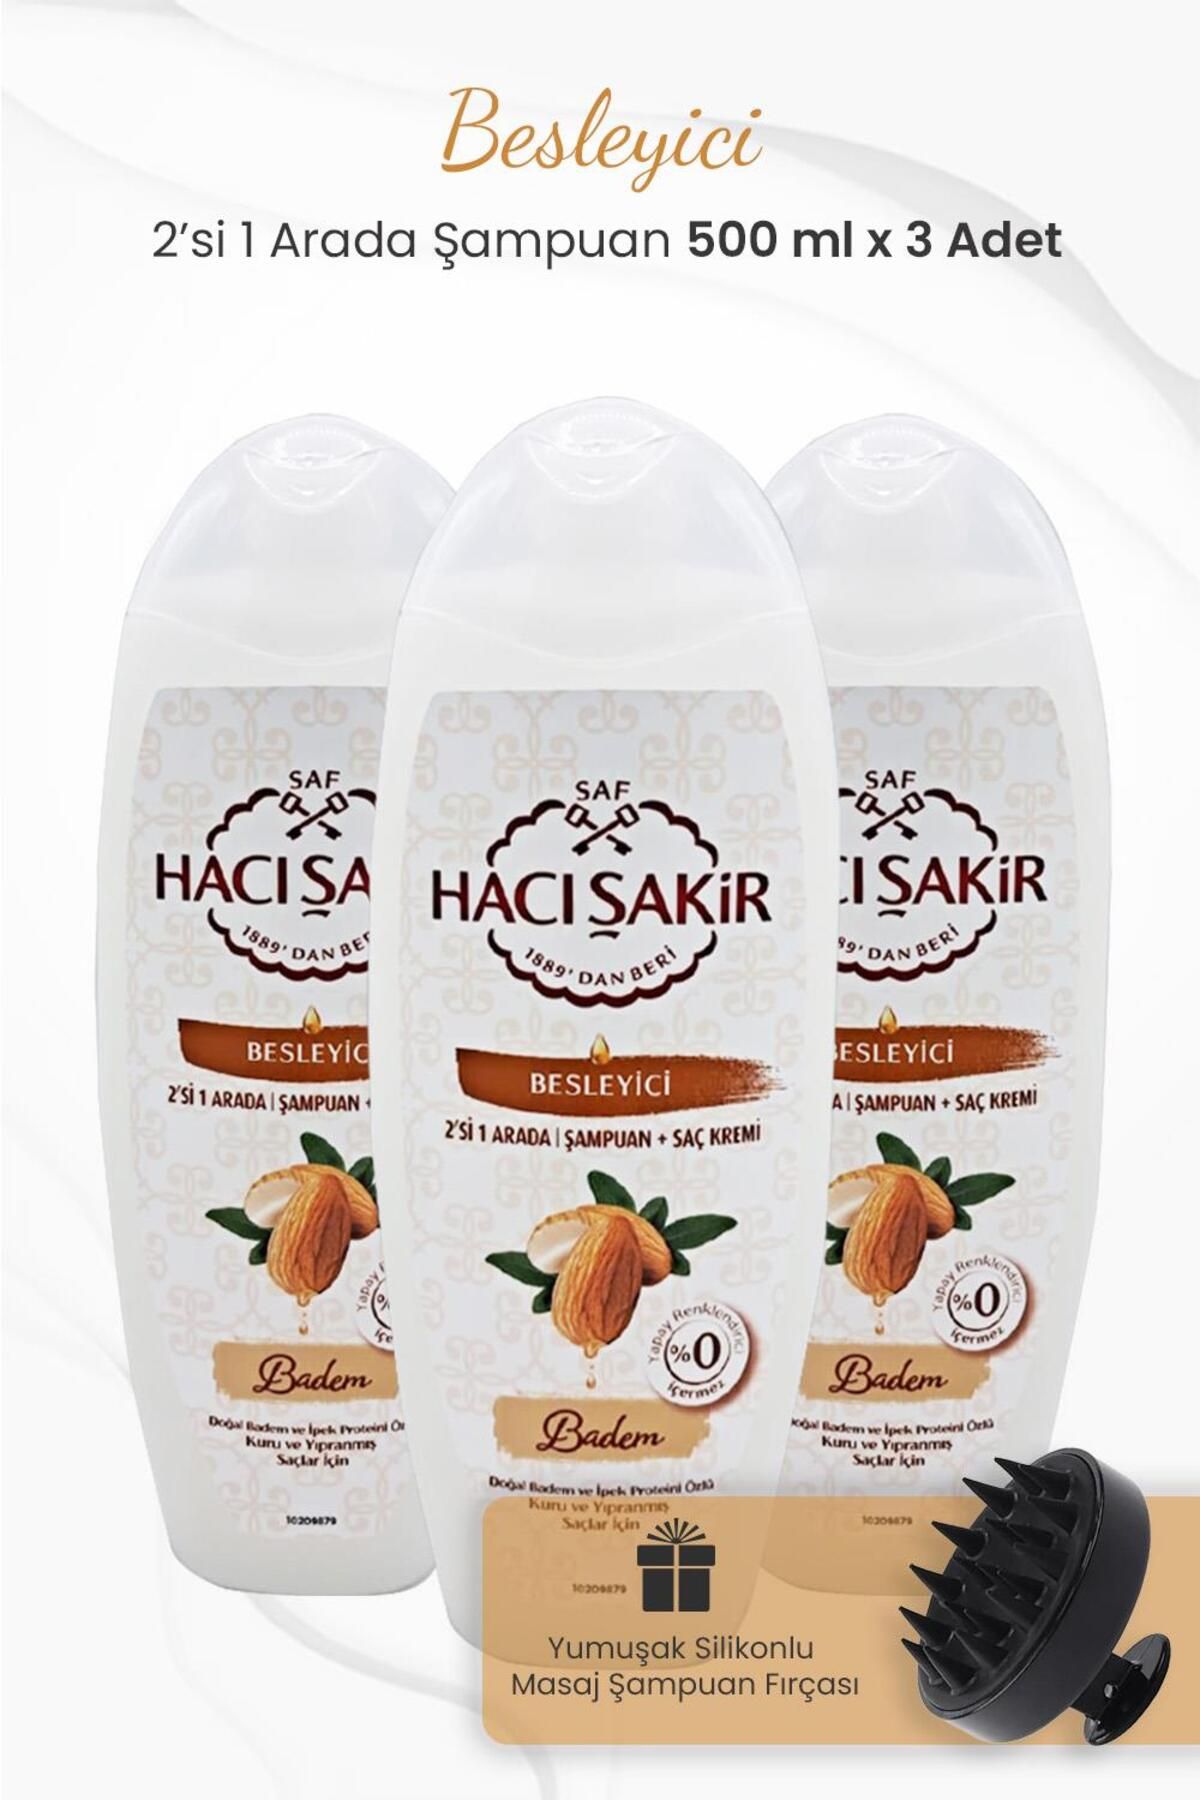 Hacı Şakir Badem 2si 1 Arada Şampuan 500 ml x 3 Adet ve Şampuan Fırçası Siyah